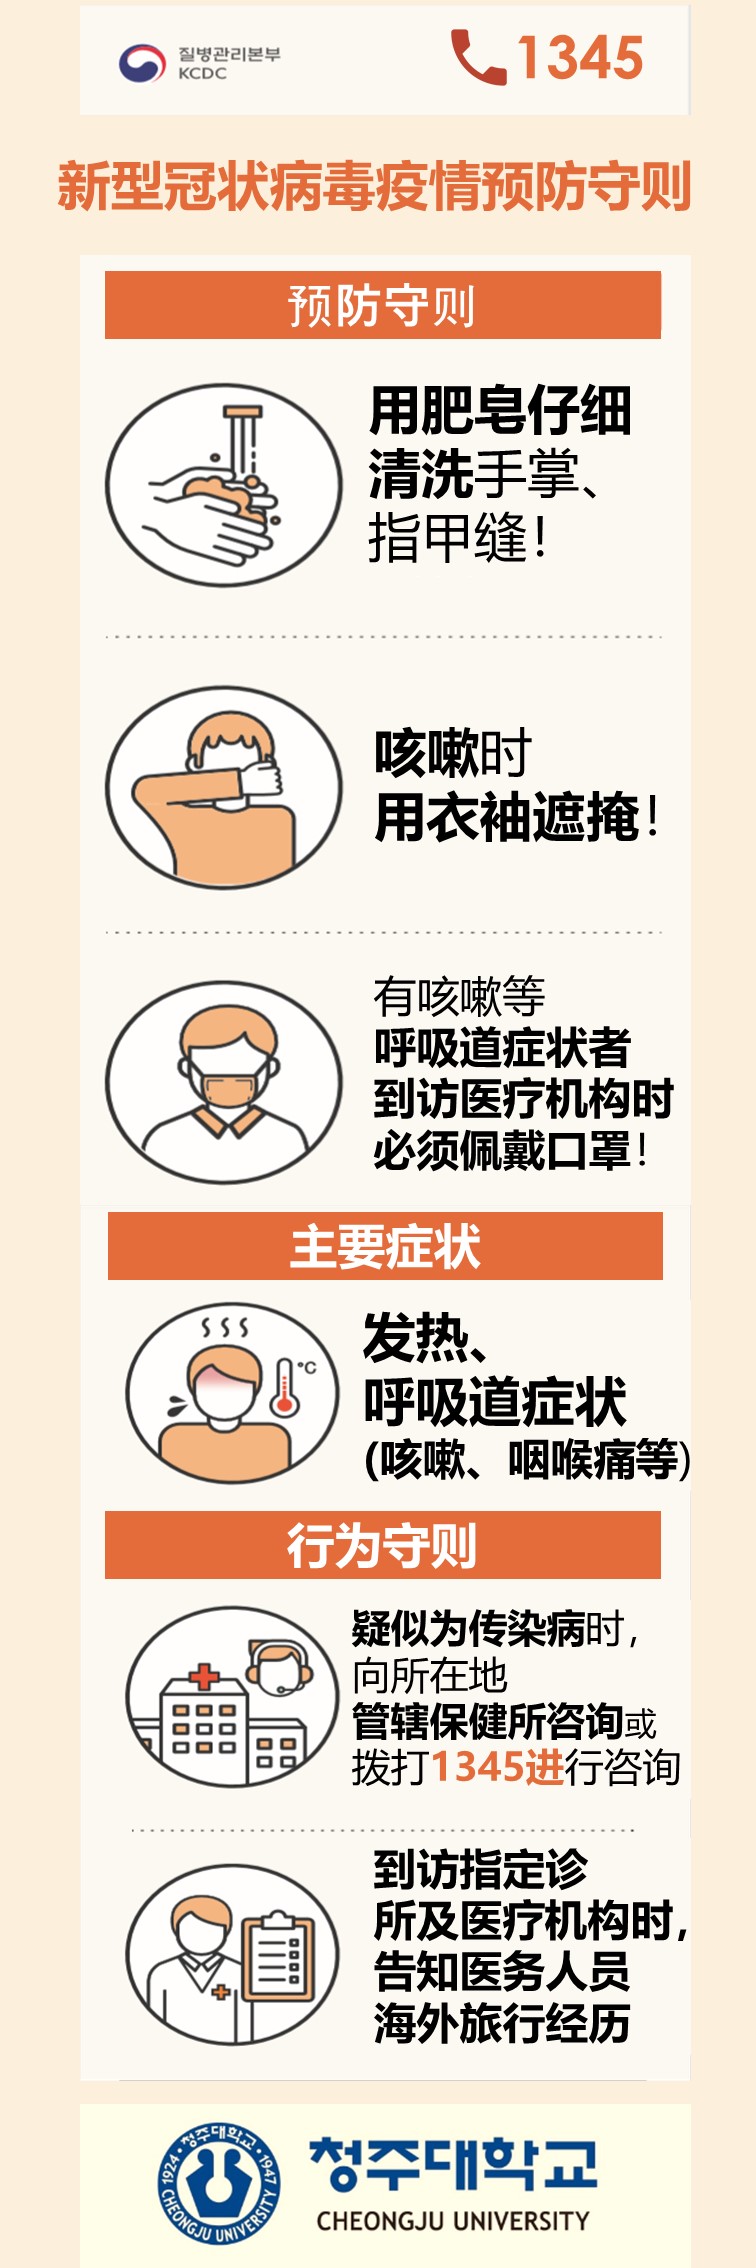 신종코로나바이러스 관련 예방수칙 및 조치사항 안내(중국어)